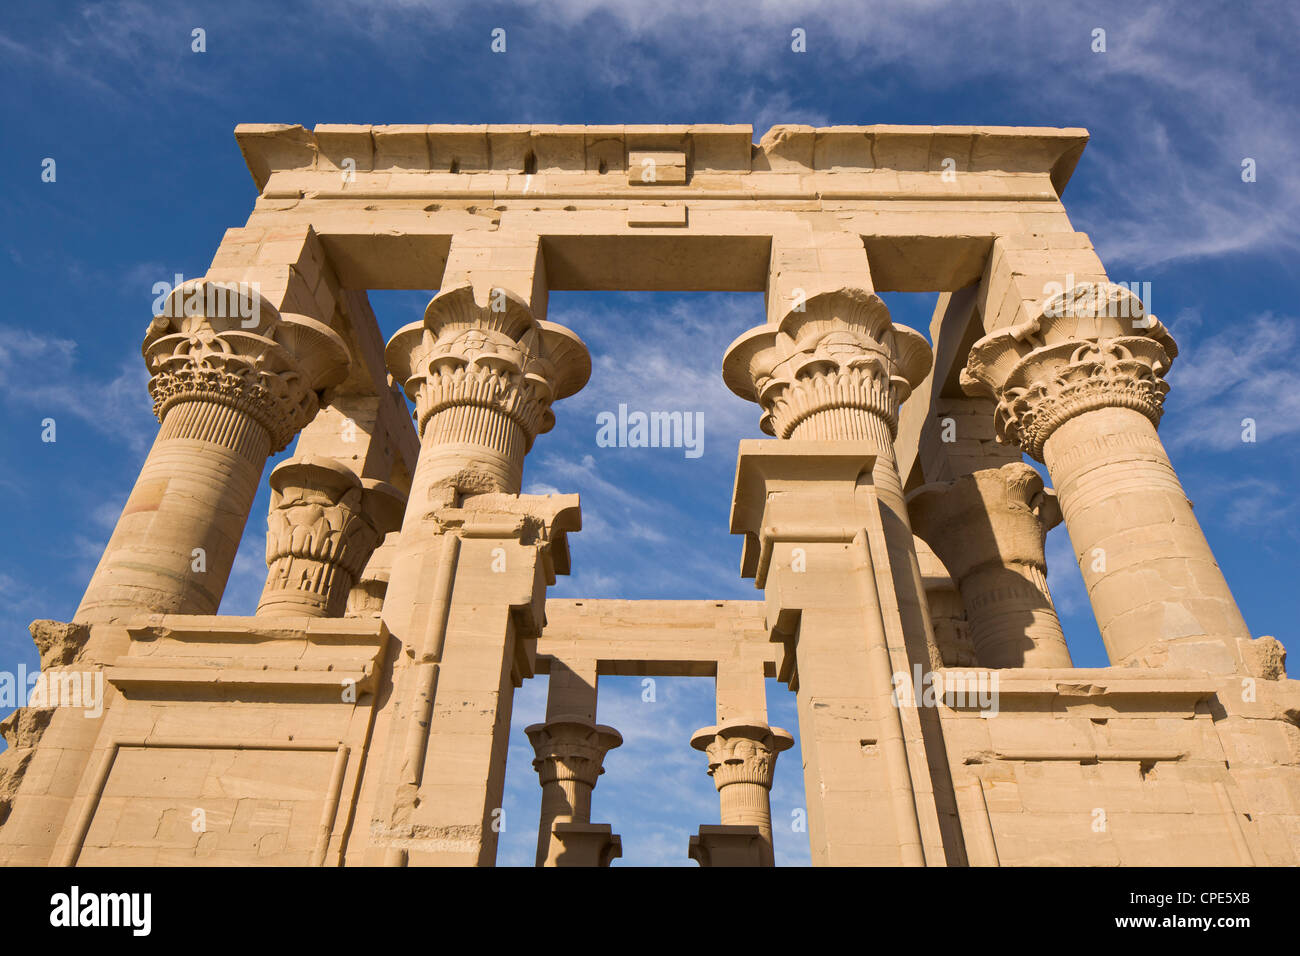 Le kiosque de Trajan au temple de Philae, UNESCO World Heritage Site, Nubie, Egypte, Afrique du Nord, Afrique Banque D'Images